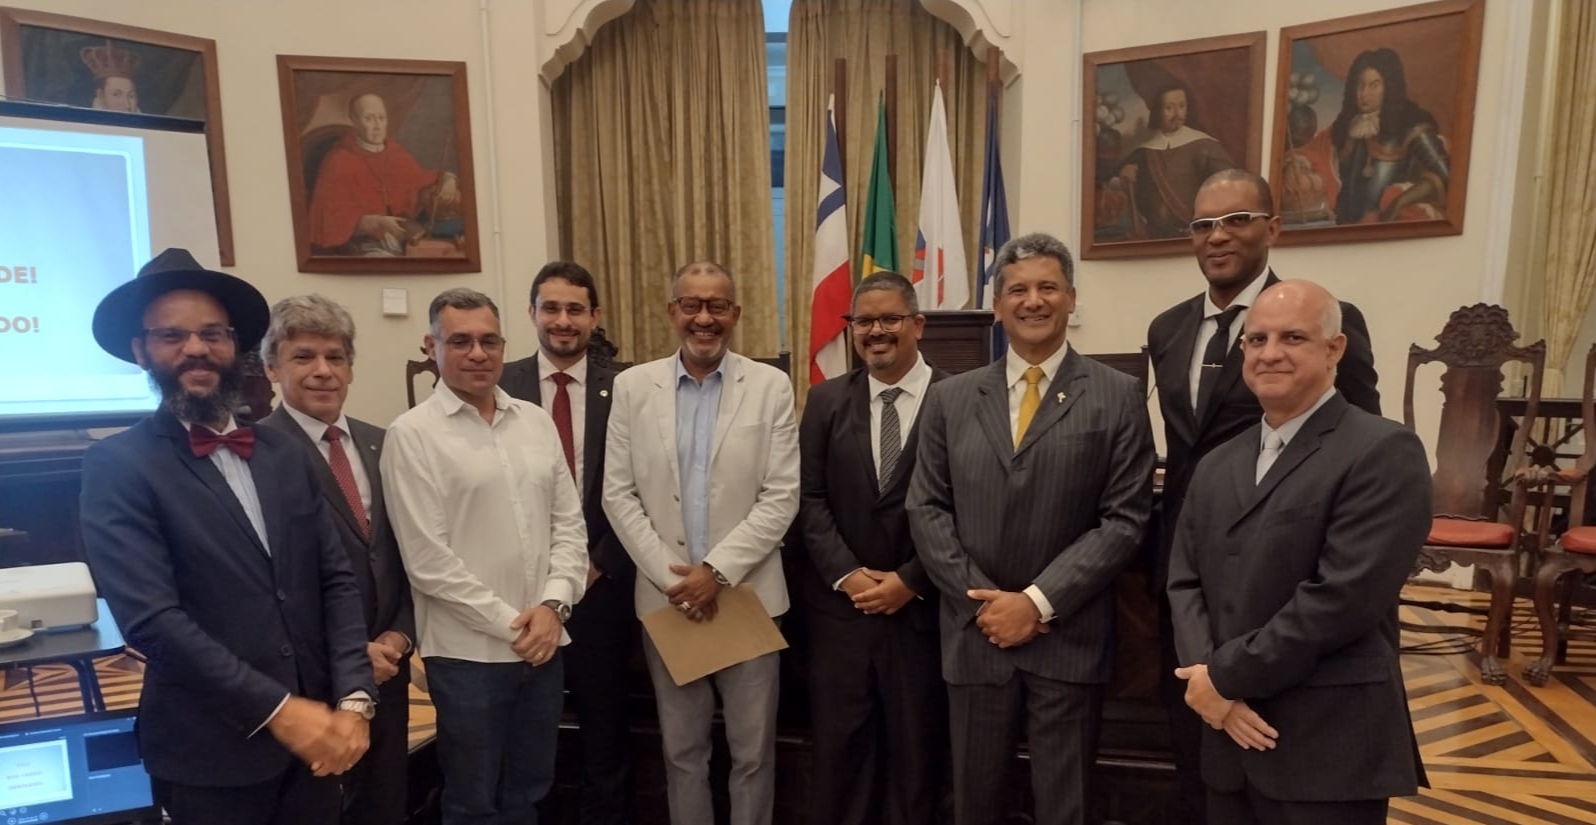 Instituto dos Operadores do Direito Desportivo da Bahia promove 3ª Edição do Prêmio IODDEB